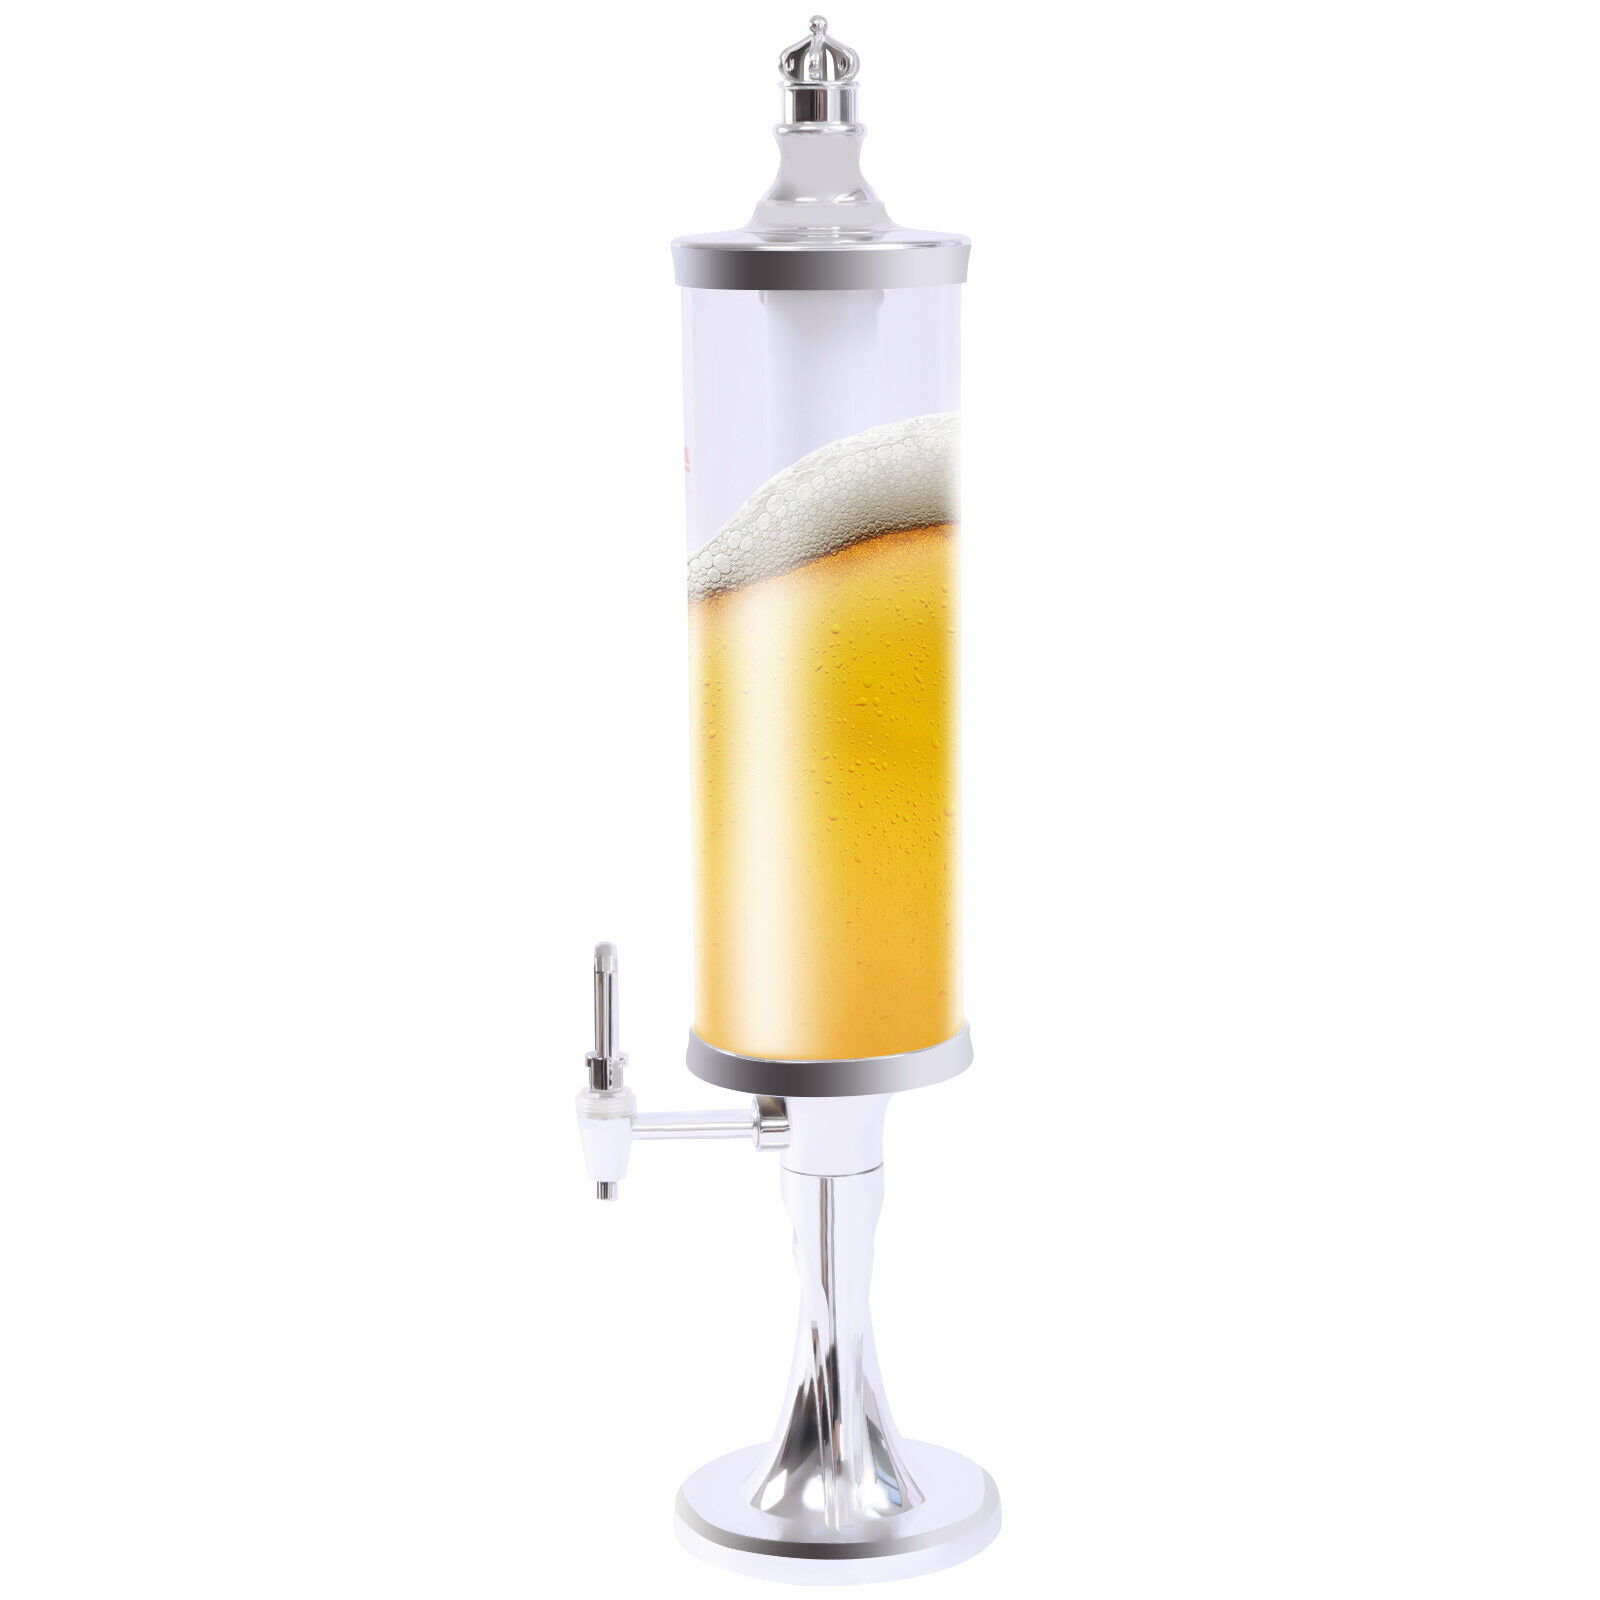 Nurluce Beer Tower Dispenser with Lights 3 L/ 100oz Beverage Tower  Dispenser LED Tabletop Liquor Juice Margarita Drink Tower Dispenser  Removable Easy